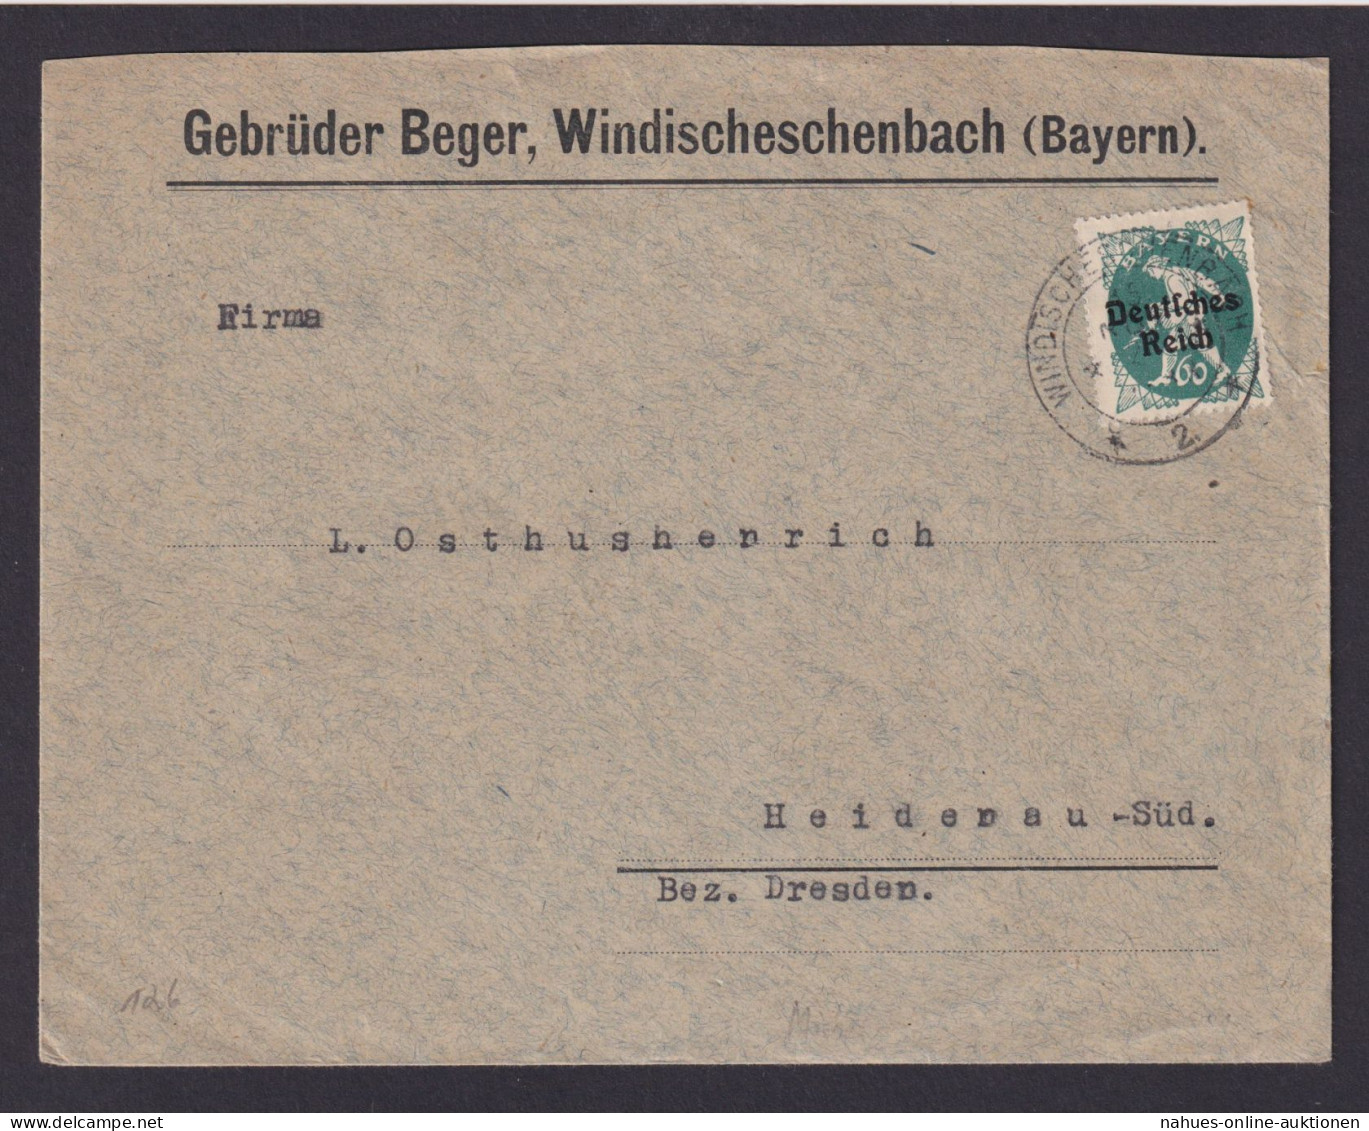 Deutsches Reich Windischeschenbach Bayern Geb. Berger Brief EF Bayern Abschied - Lettres & Documents